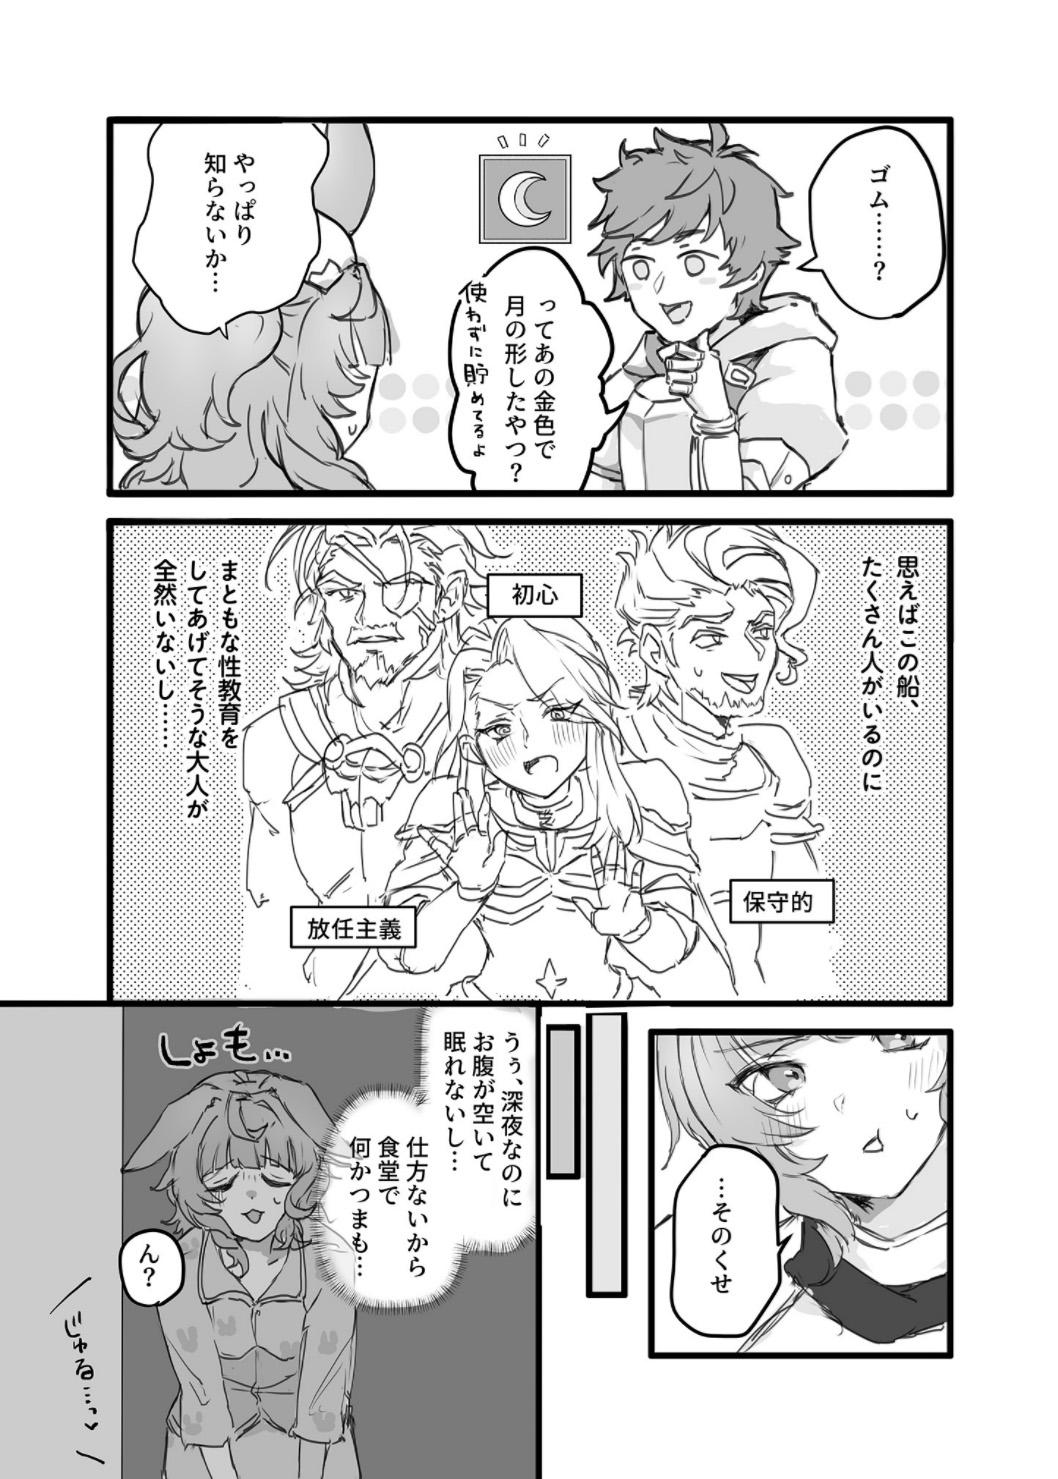 Str8 Kore, Nani ka Shitteru? - Granblue fantasy Piercings - Page 3